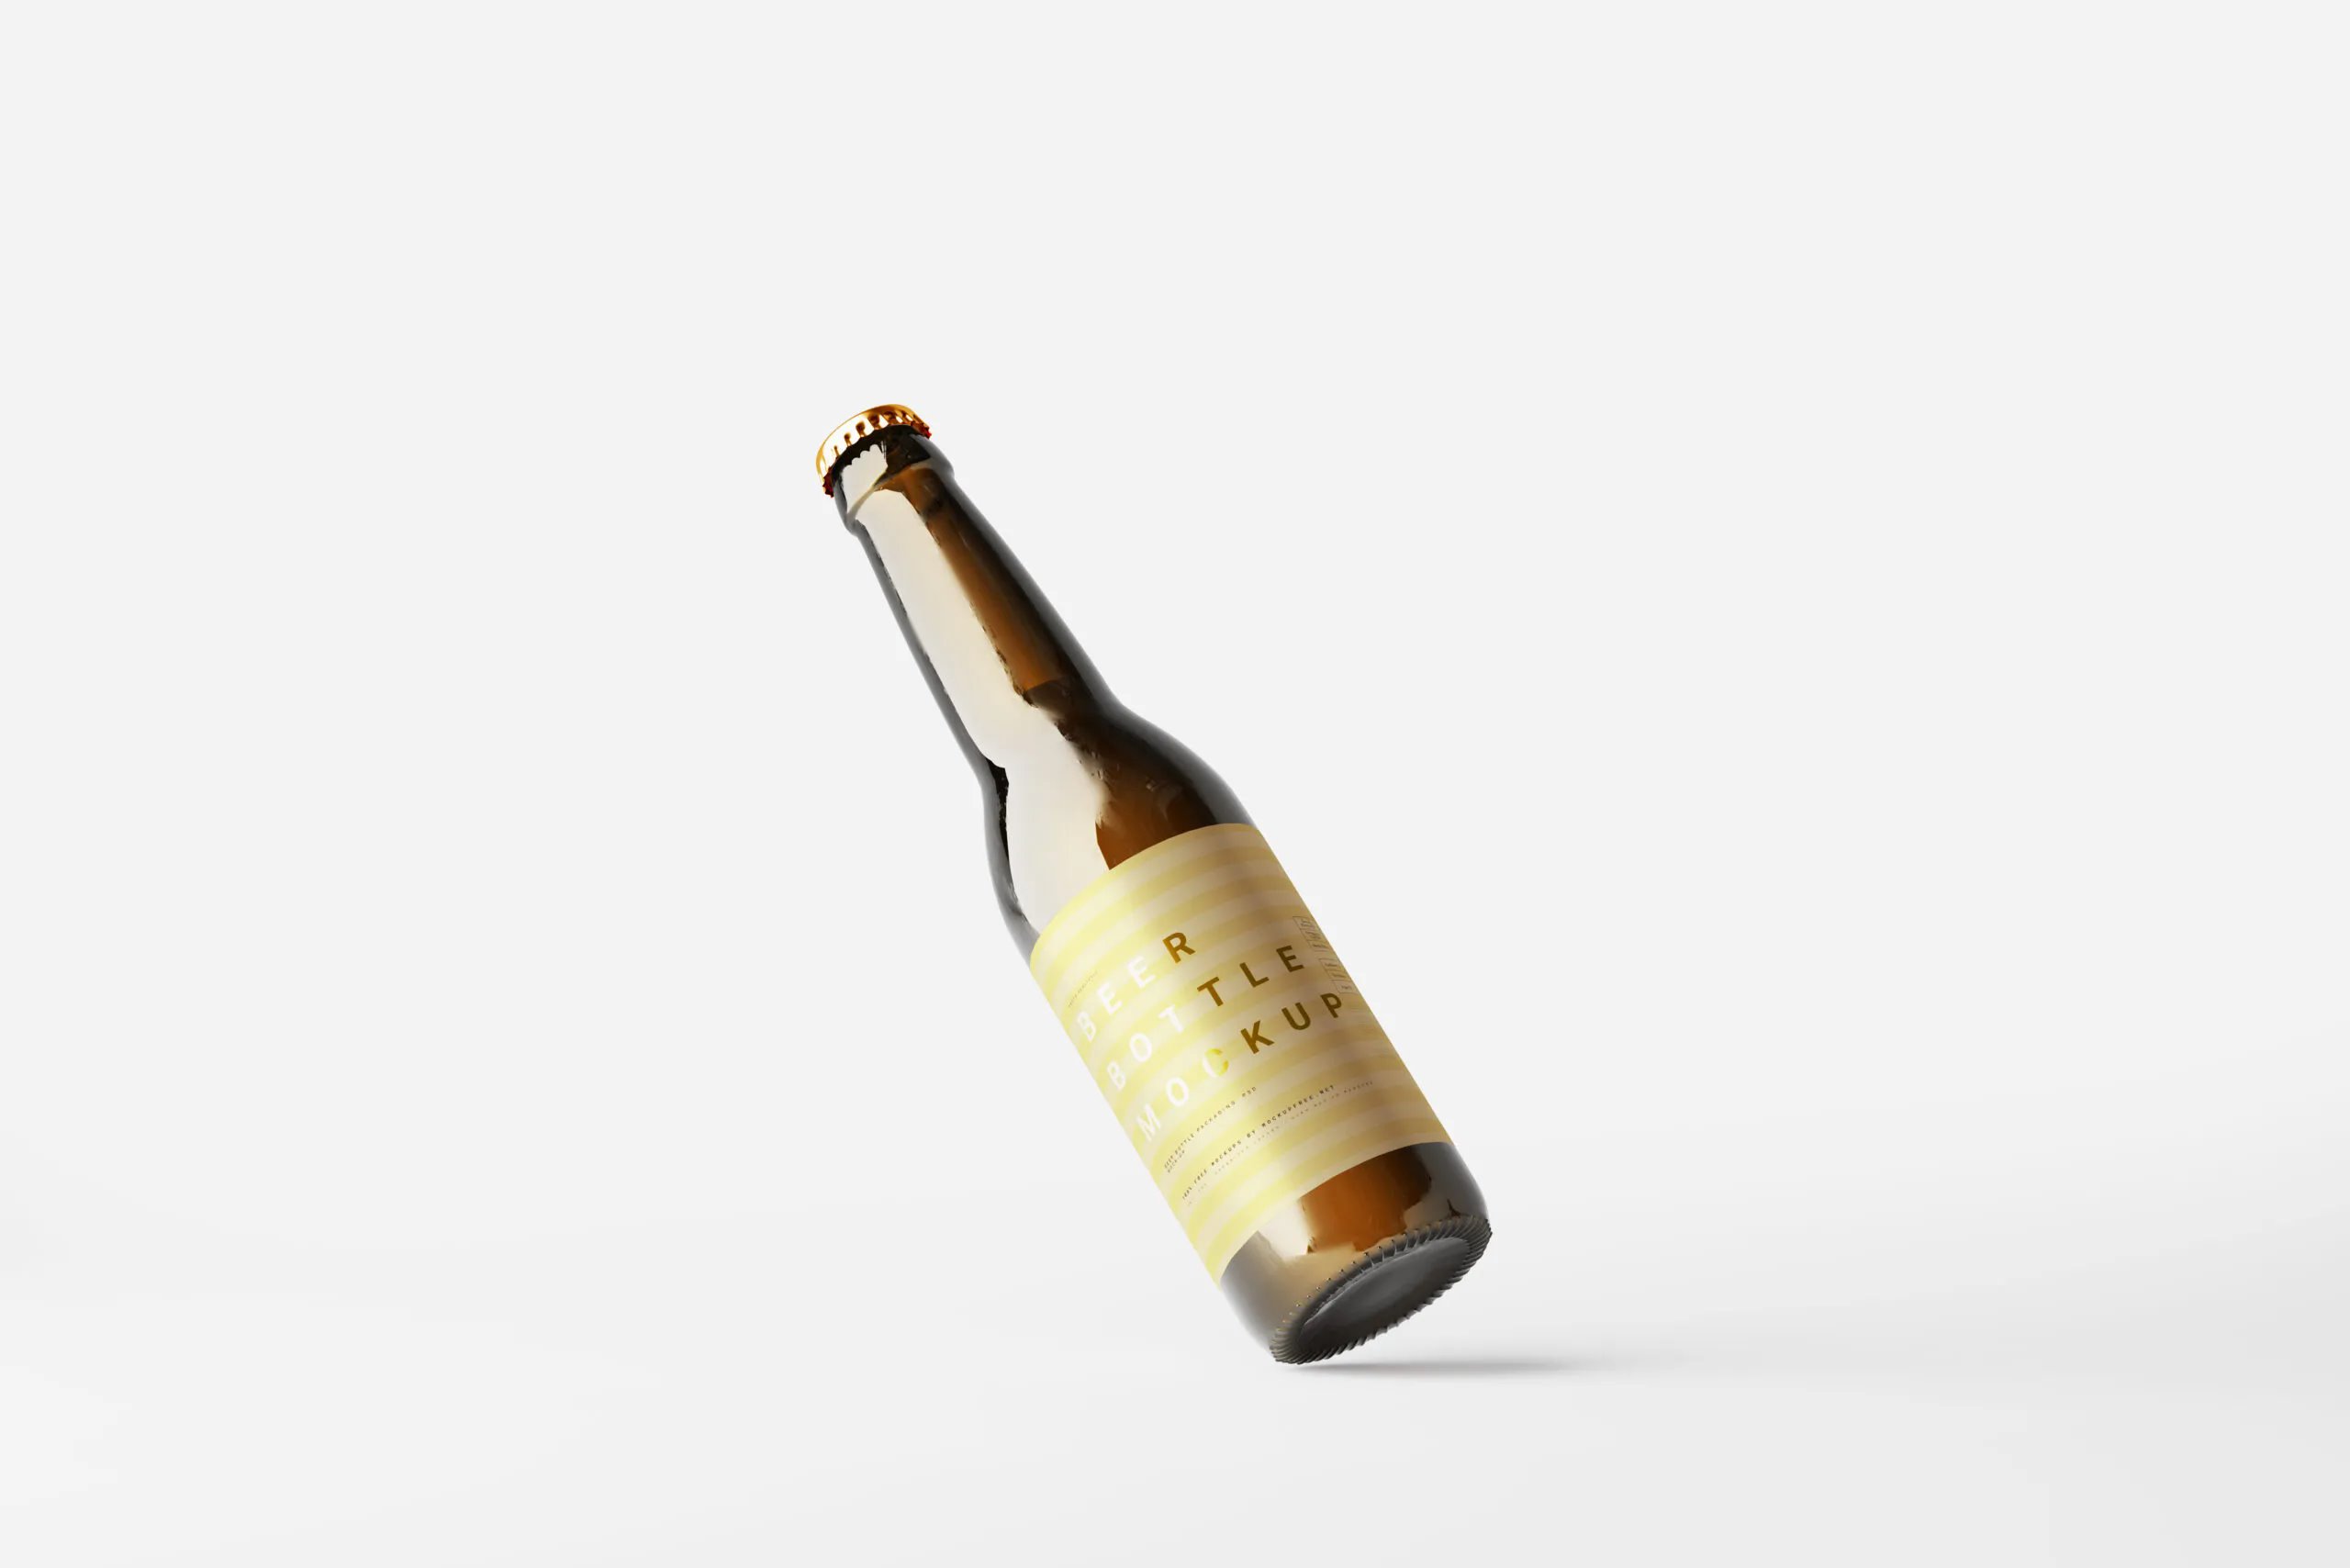 10 Mockups of Slim Beer Bottles in Varied Visions FREE PSD